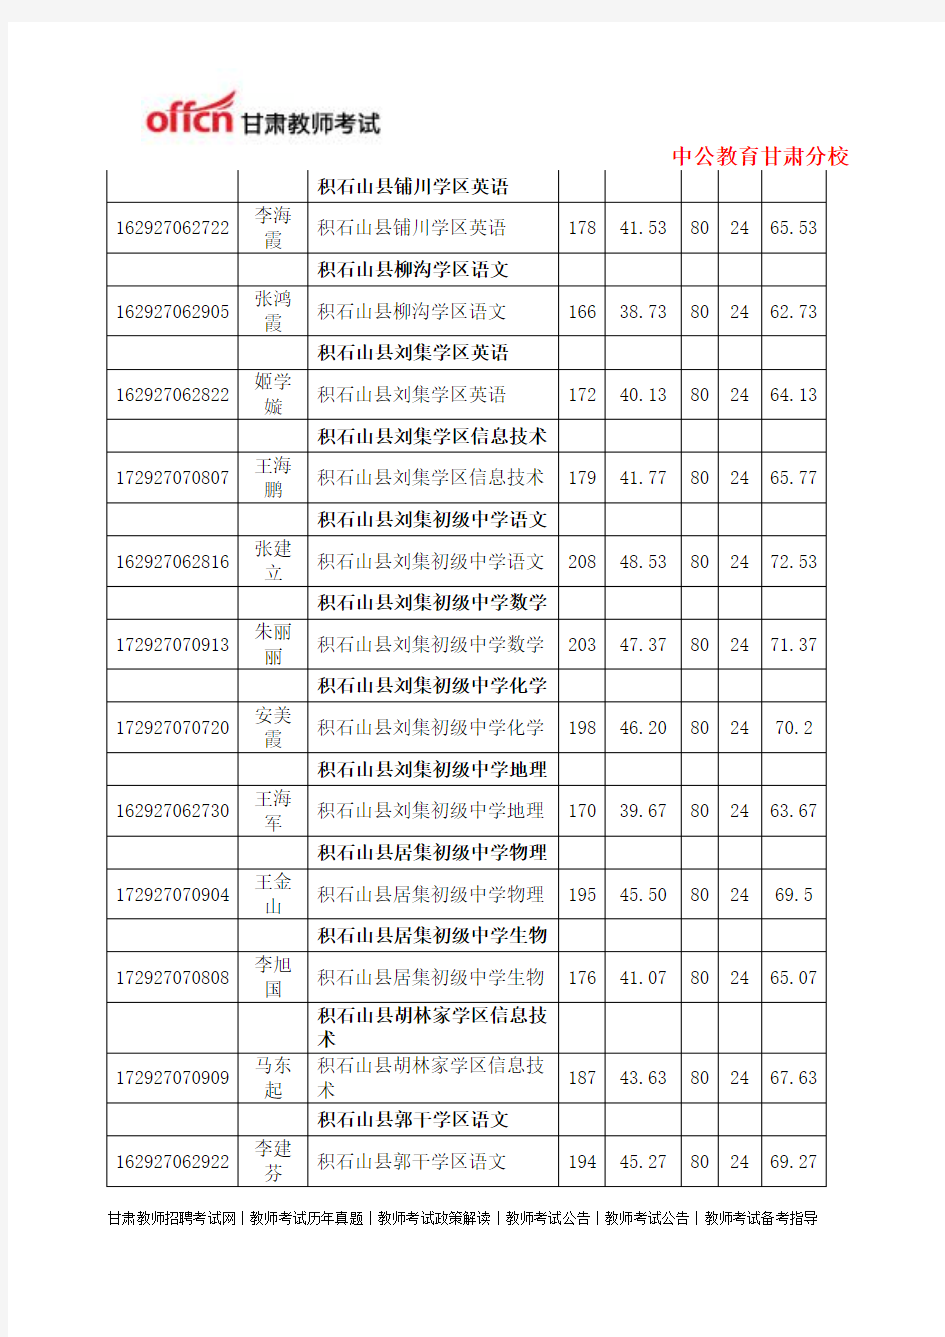 2014年特岗教师招聘积石山县拟聘用人员名单5